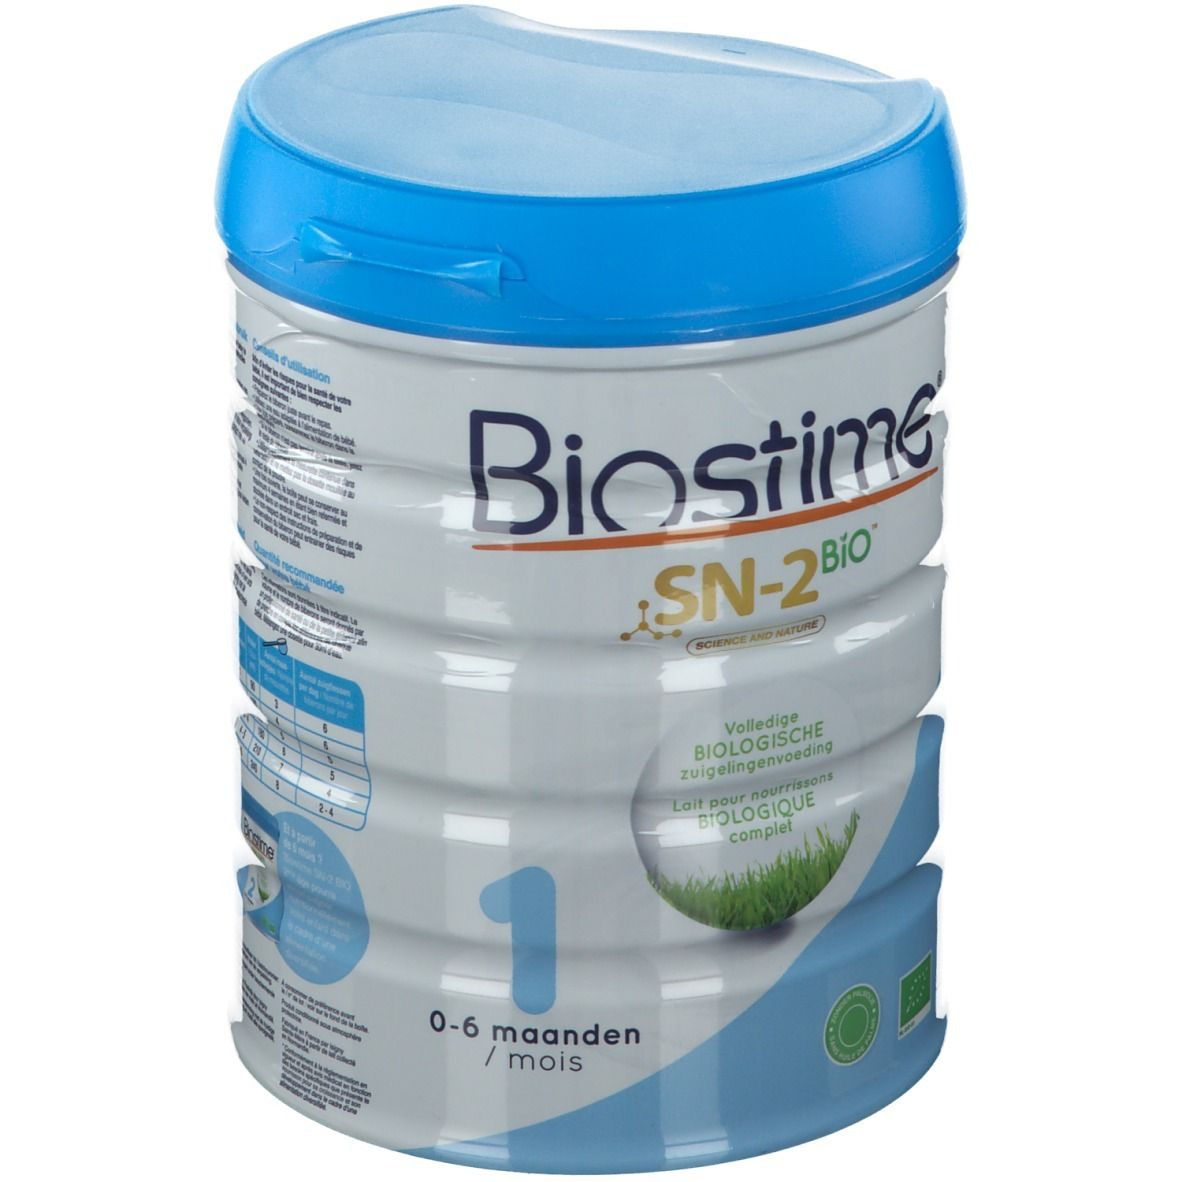 Biostime® 1 SN-2 Bio Lait infantile 1er âge